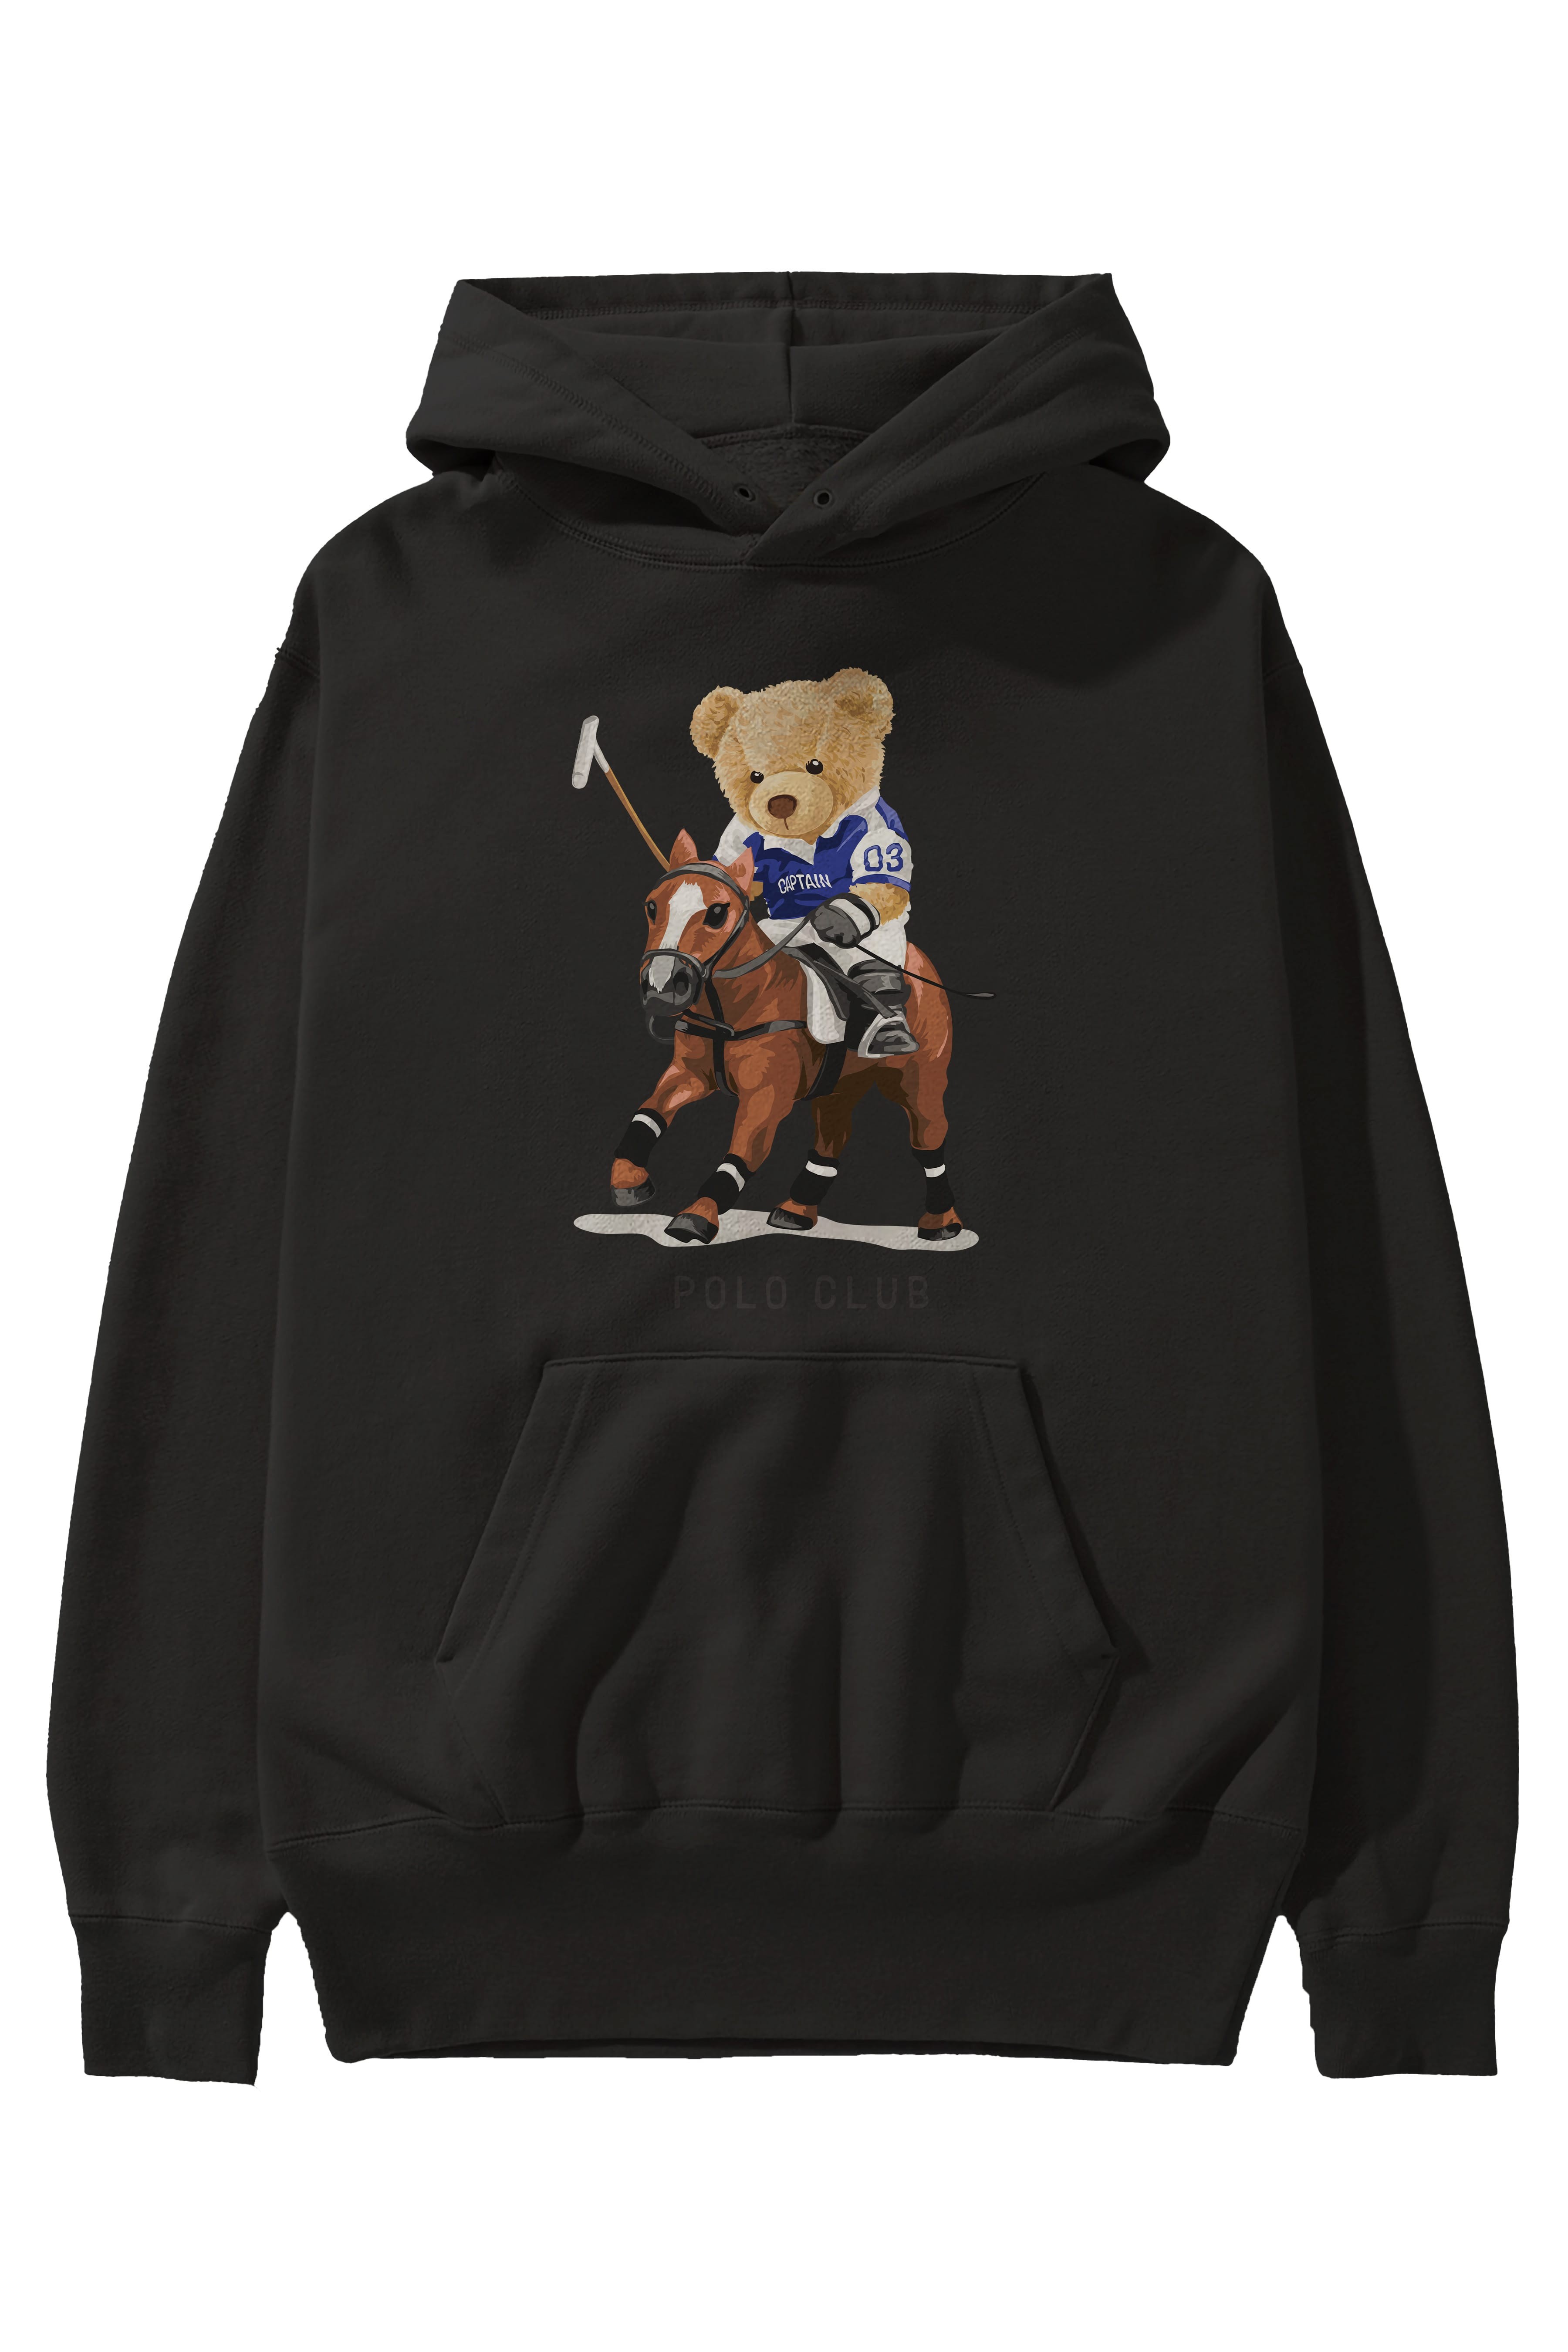 Teddy Bear Polo Club Ön Baskılı Hoodie Oversize Kapüşonlu Sweatshirt Erkek Kadın Unisex